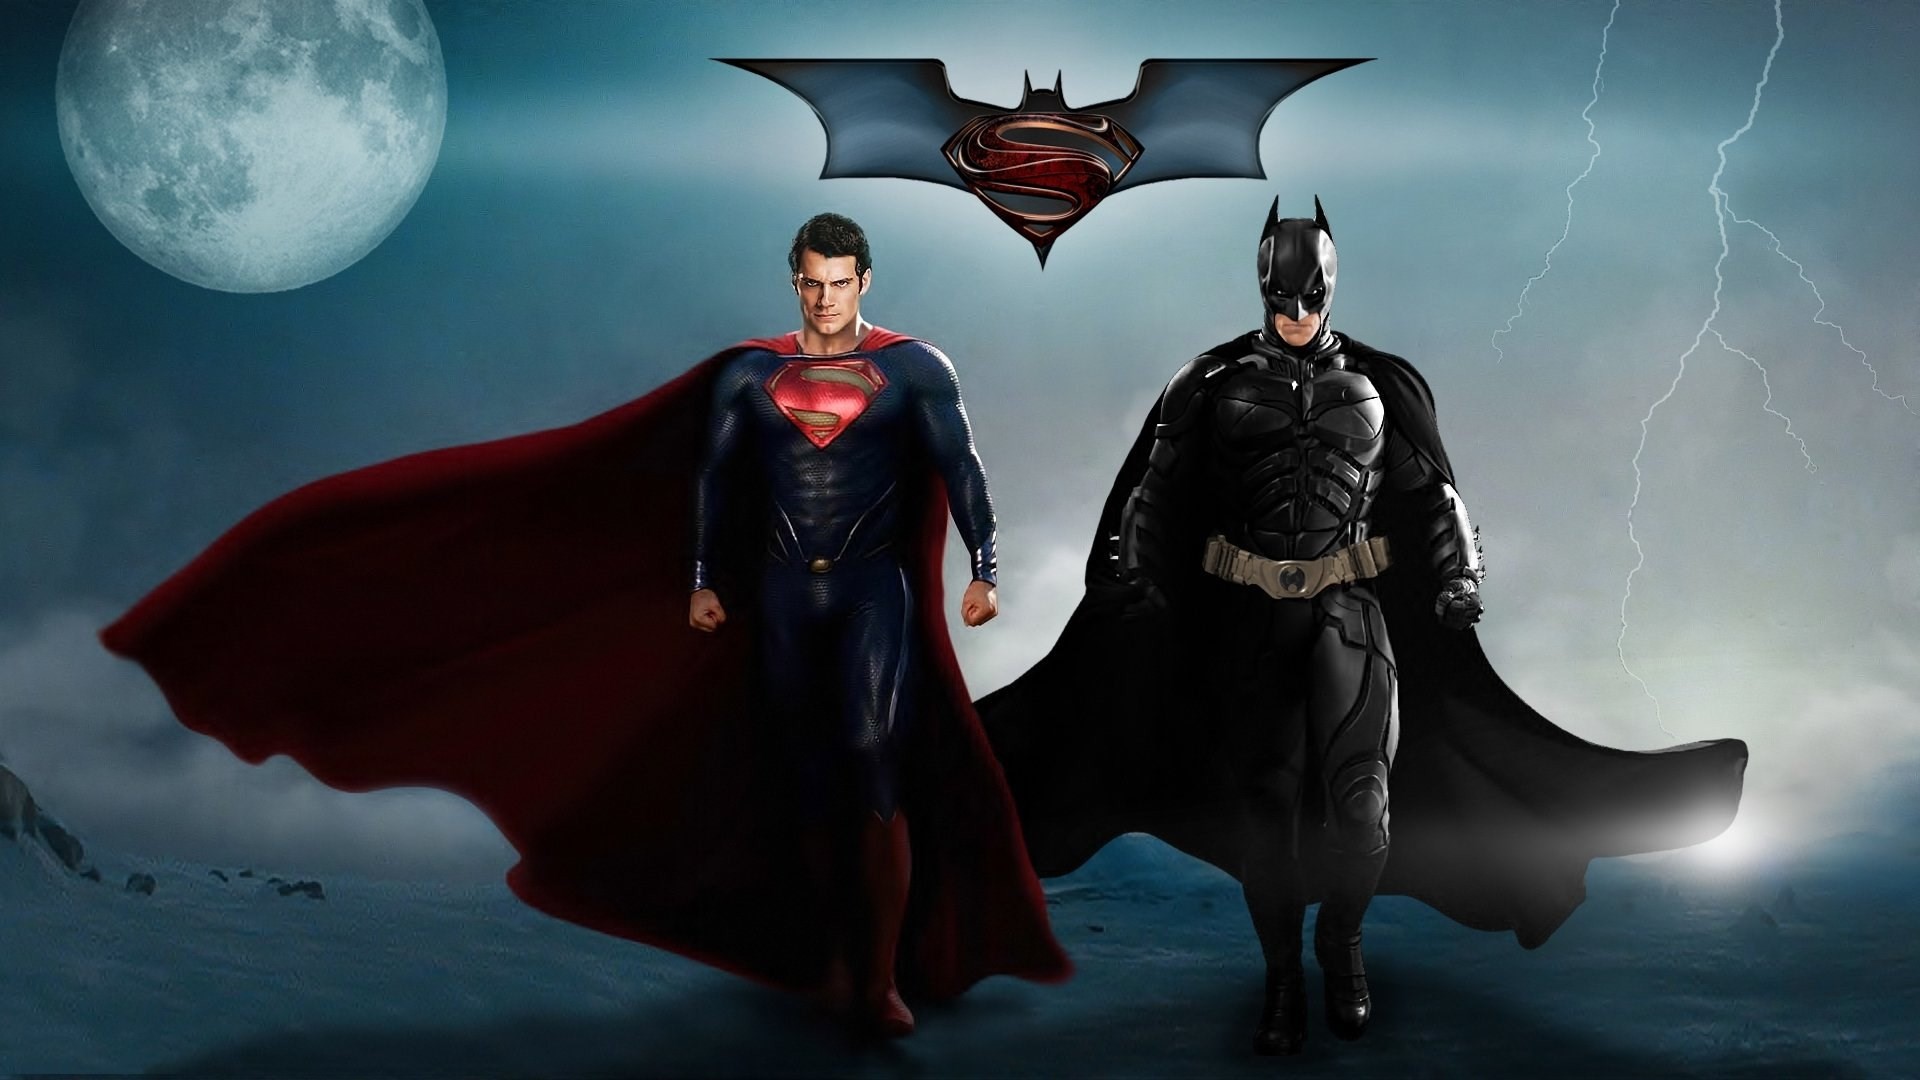 1920x1080 batman vs superman wallpaper to download - batman vs superman category